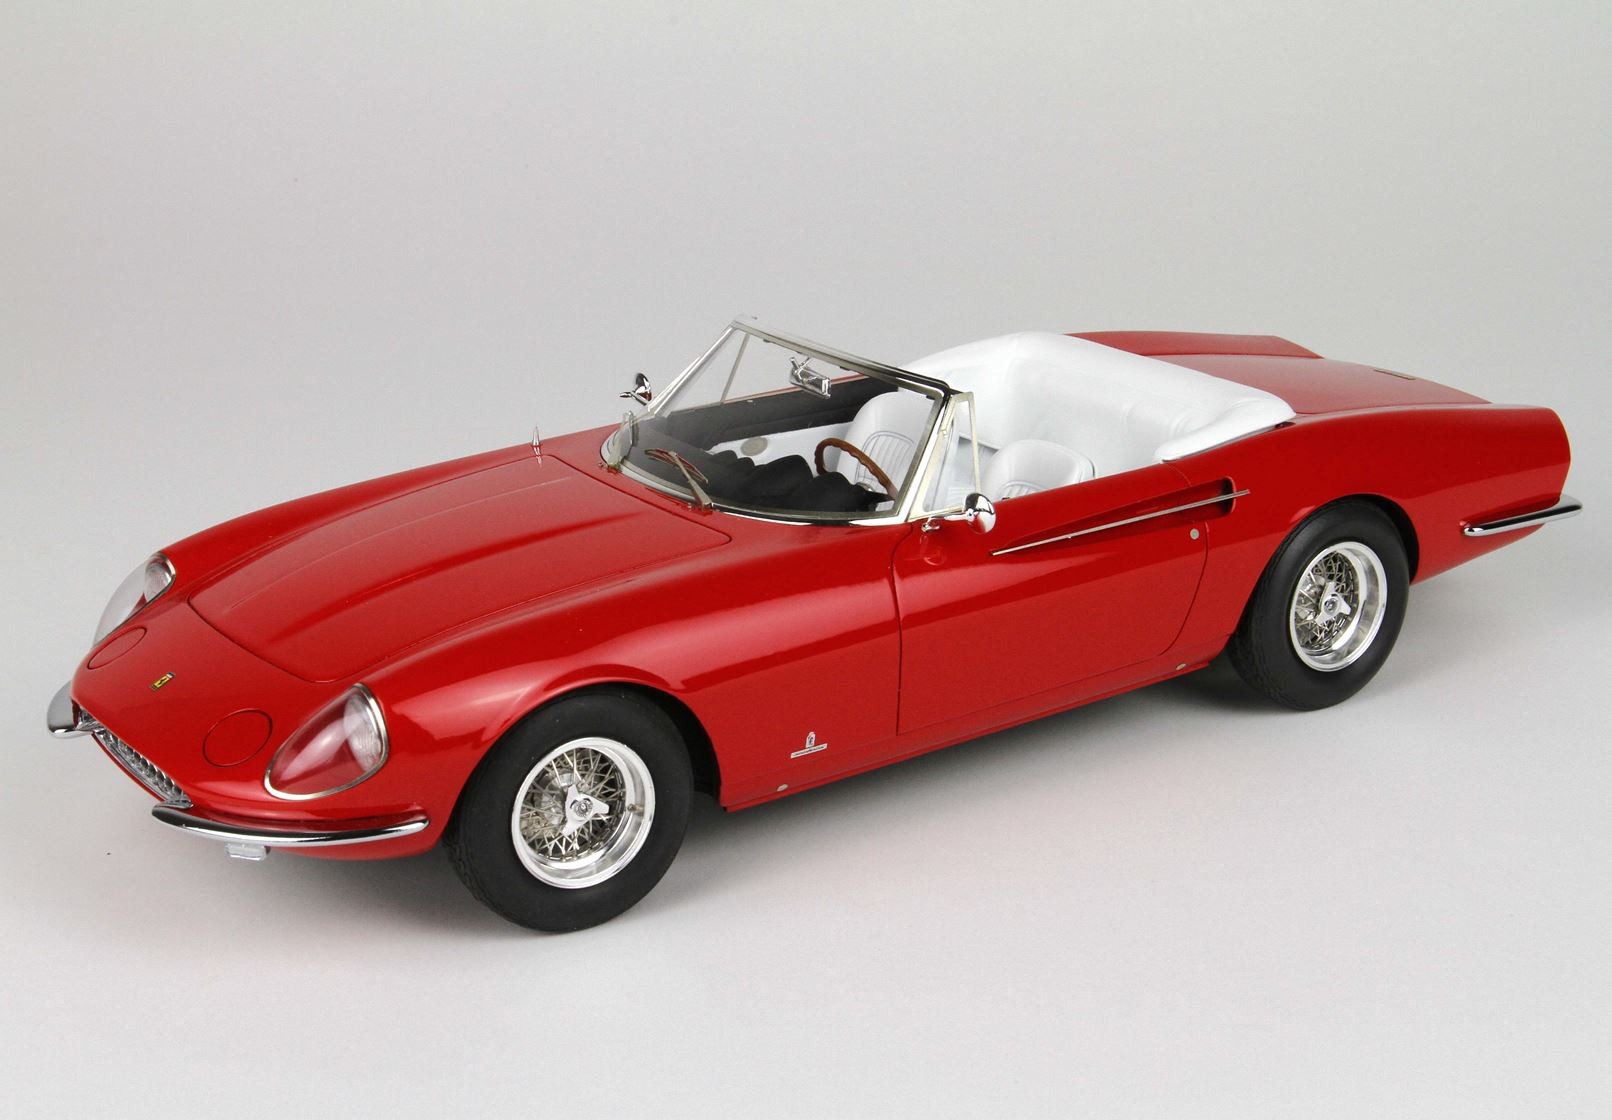 BBR - Ferrari 365 California SN 09935 1966: BBR1814D